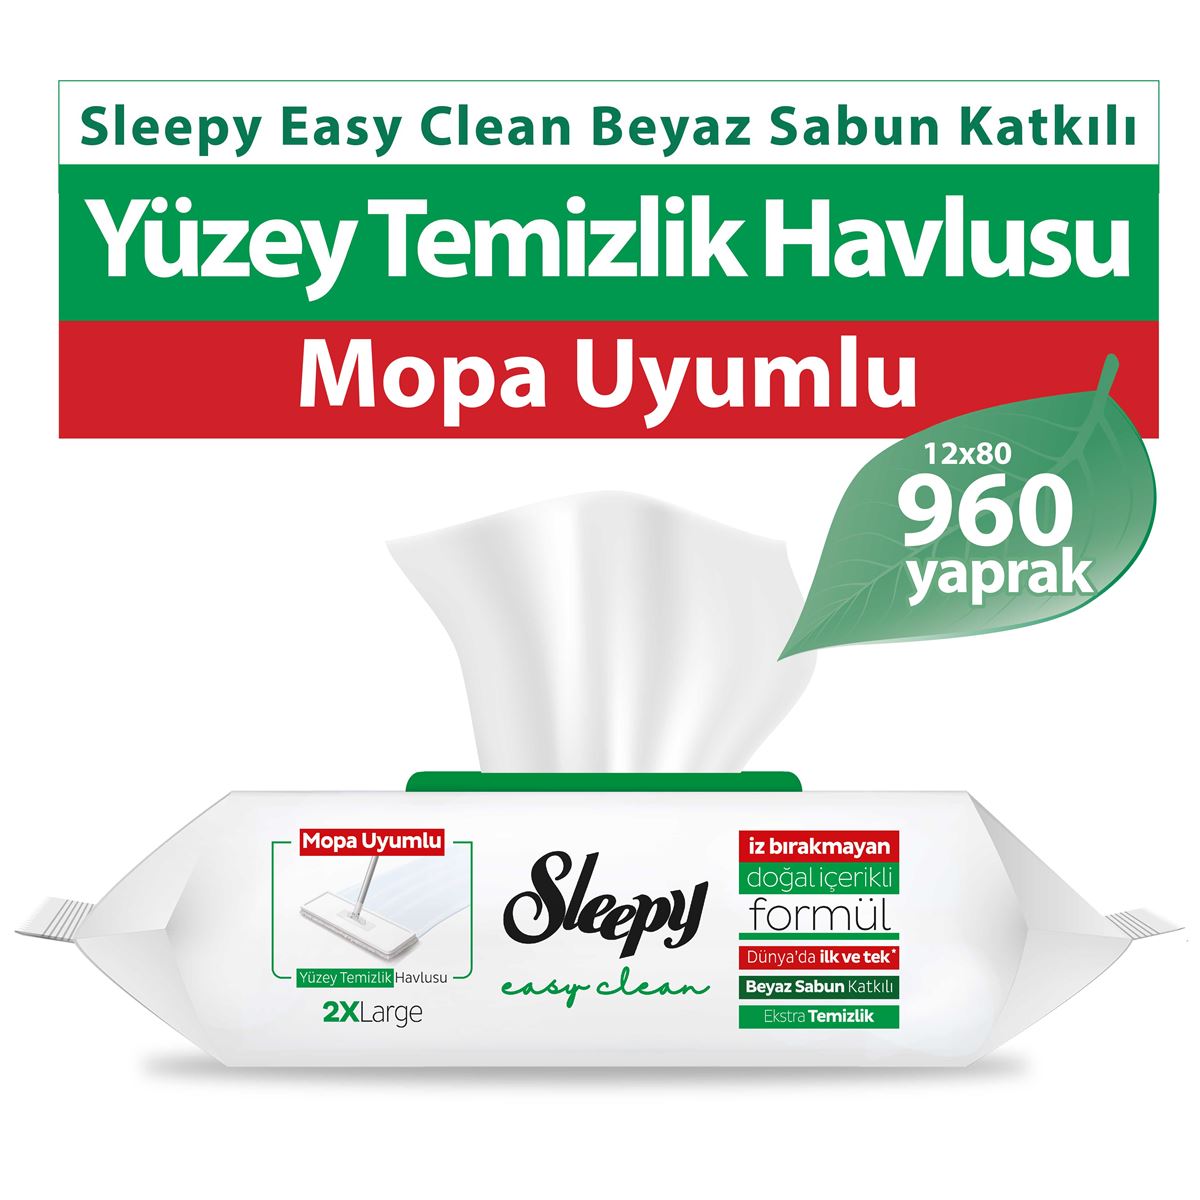 Sleepy Easy Clean Beyaz Sabun Katkılı Mopa Uyumlu Yüzey Temizlik Havlusu 12x80 (960 Yaprak)